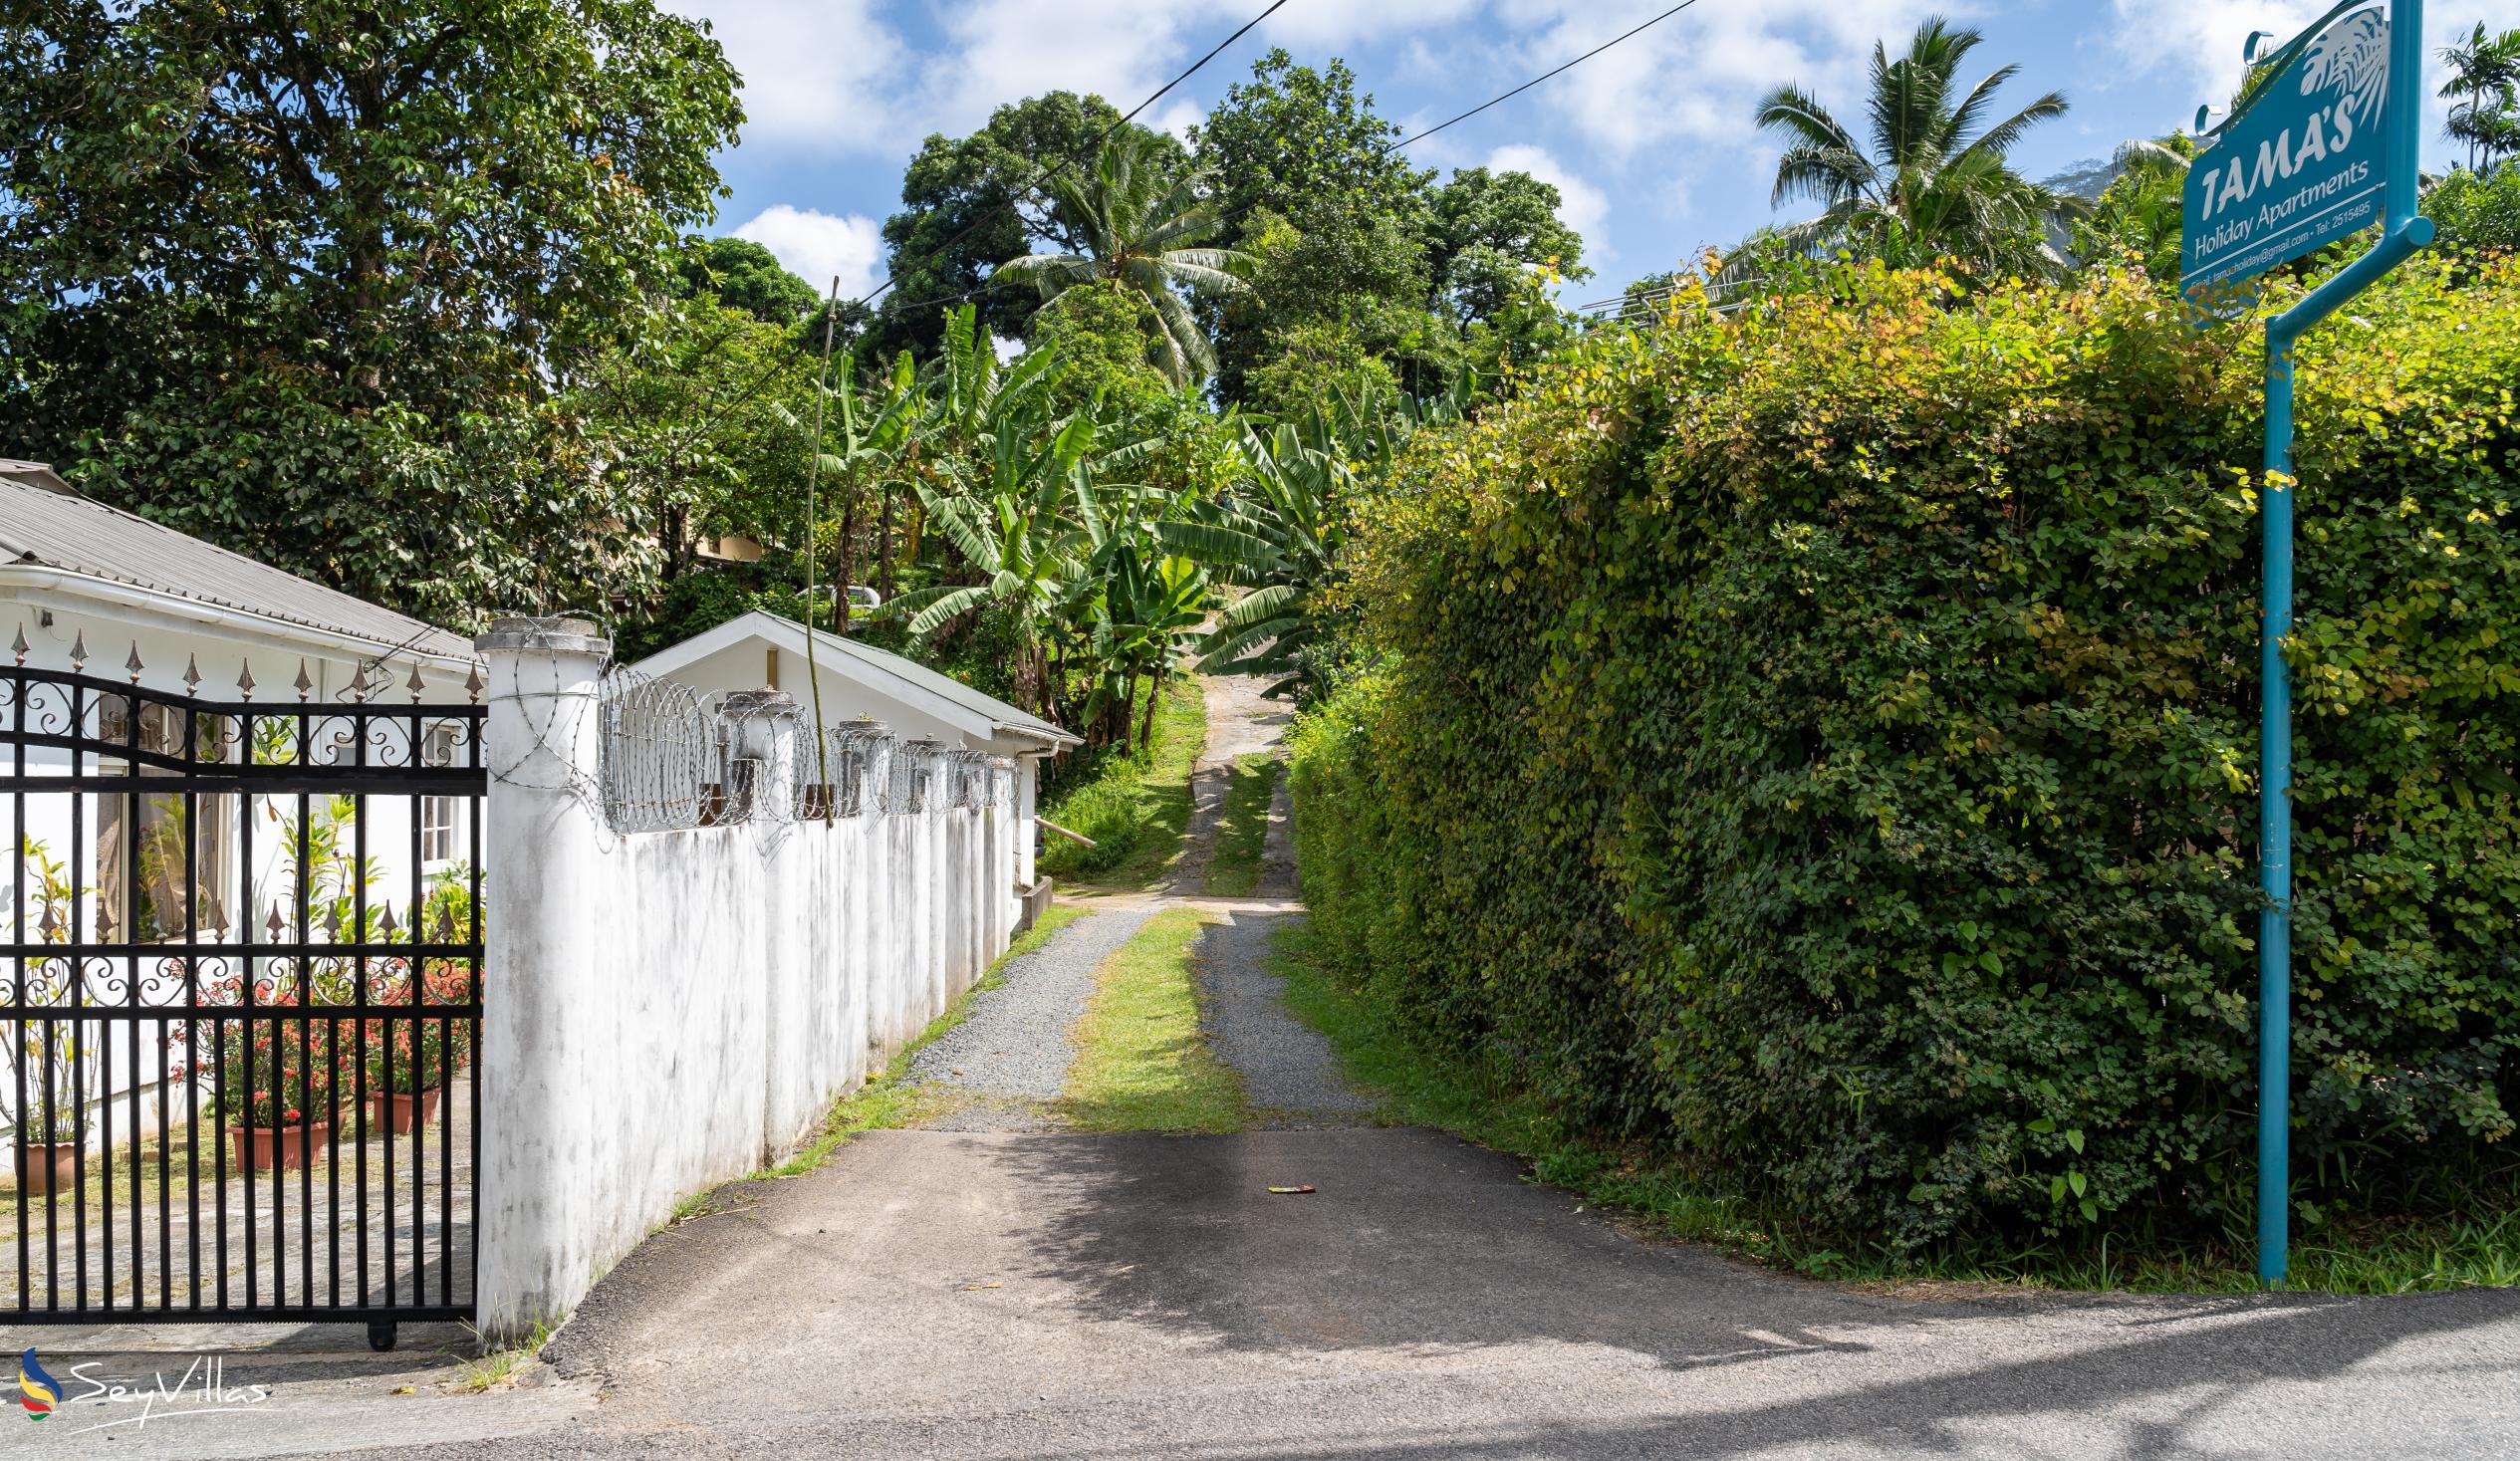 Foto 20: Tama's Holiday Apartments - Location - Mahé (Seychelles)